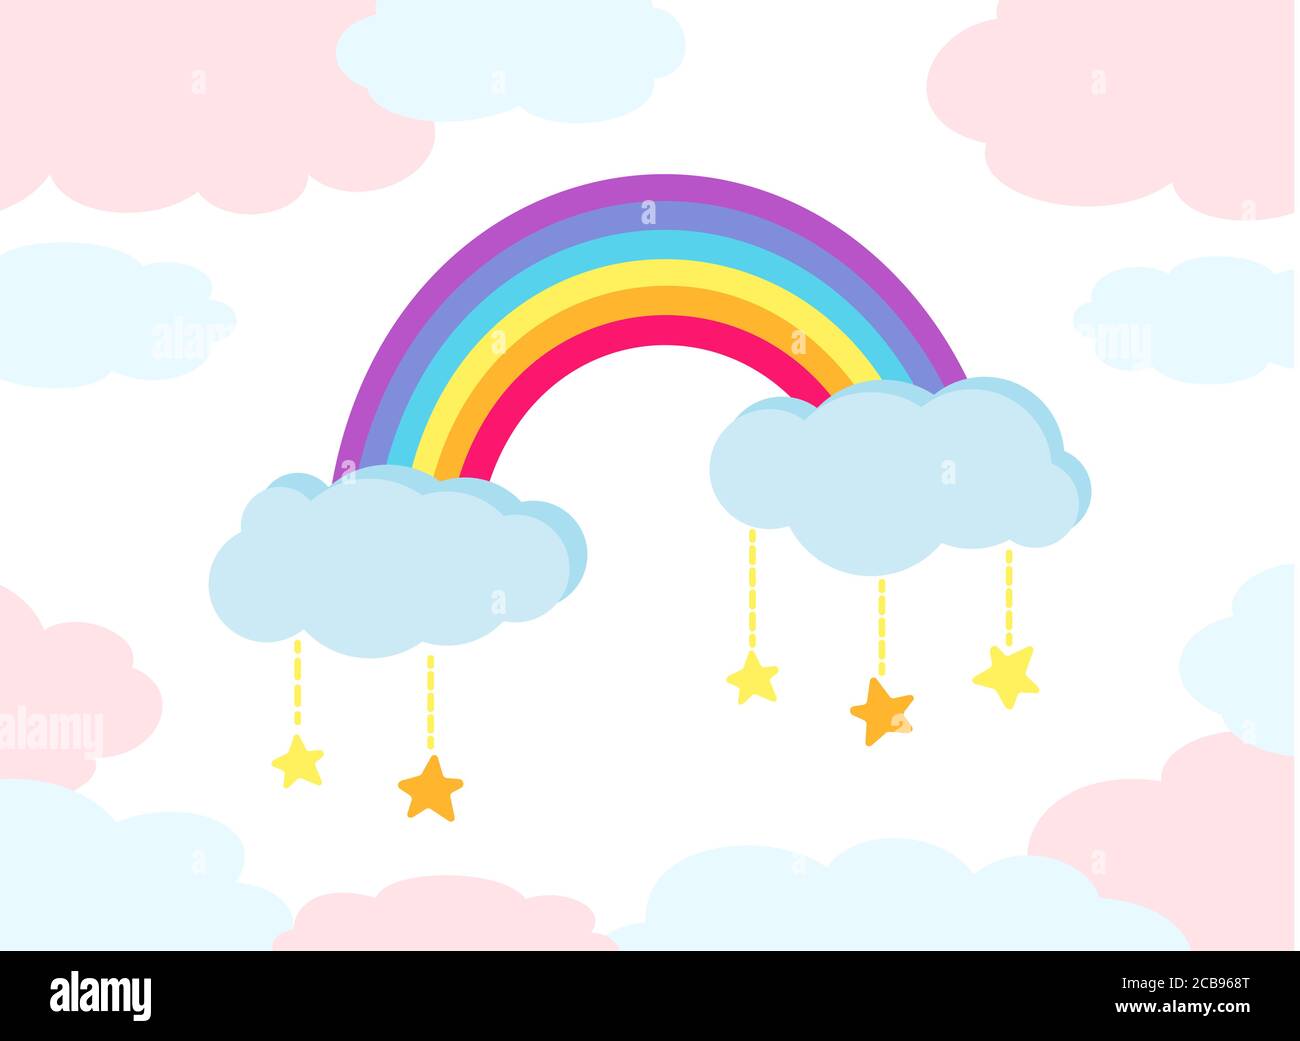 Arco iris con estrellas de color plano estilo dibujos animados, con nubes  abstractas. Bonita naturaleza brillante clima, elementos dibujados a mano  para los niños. Para impresión, tarjeta, tela o libro. Ilustración vectorial